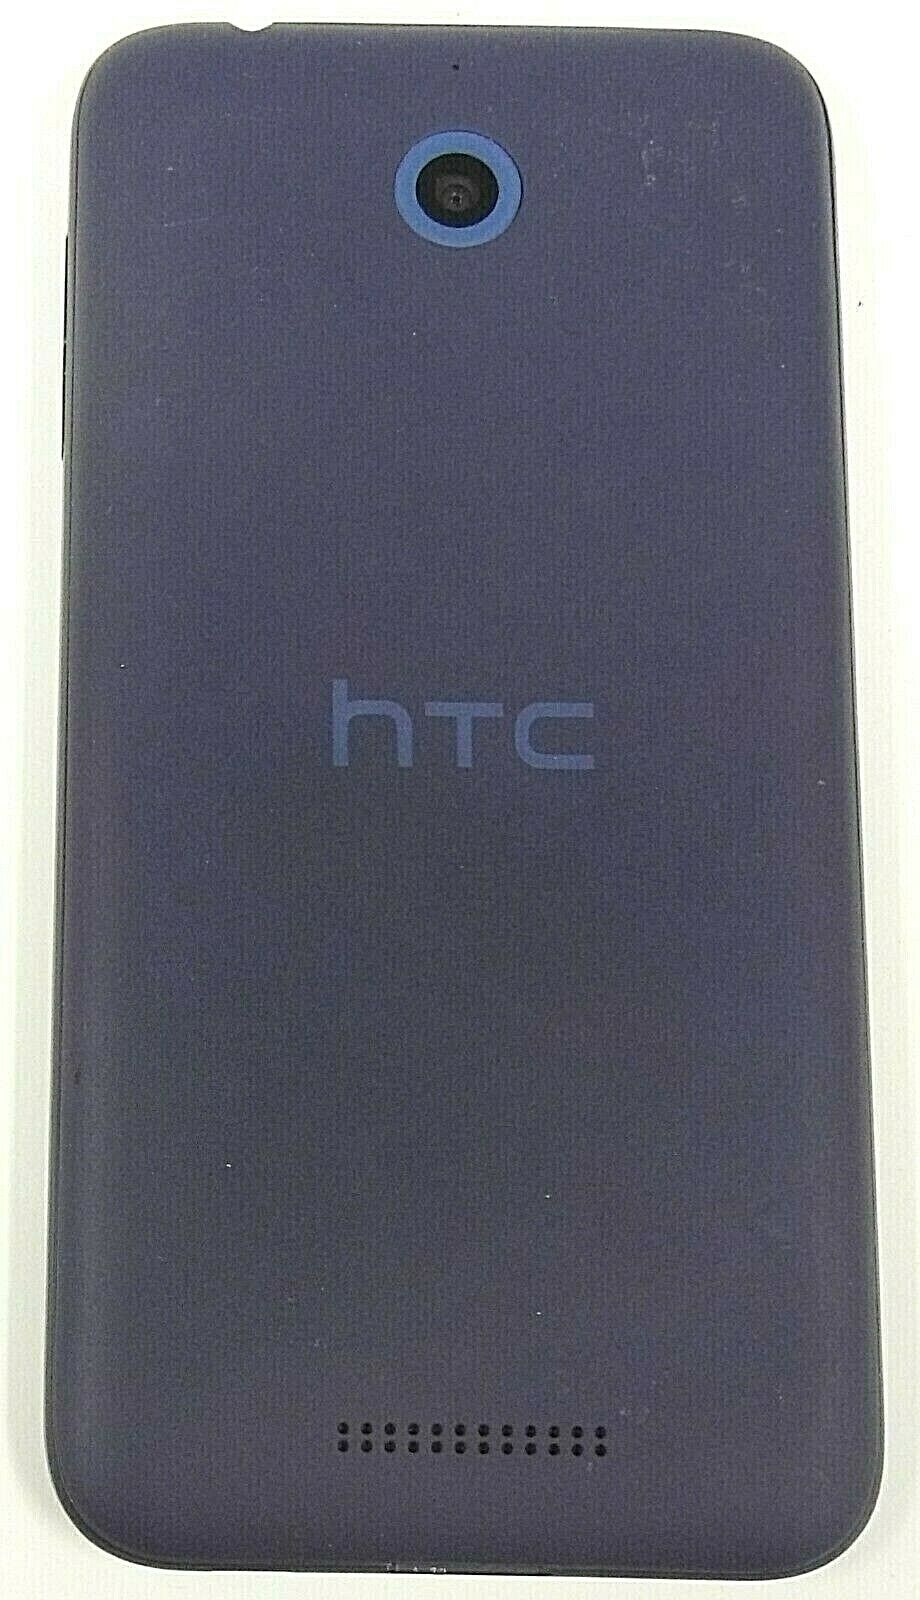 HTC Desire 510 - Deep Navy Blue ( Sprint ) Android Smartphone - Bundled HTC HTC Desire 510 - фотография #3